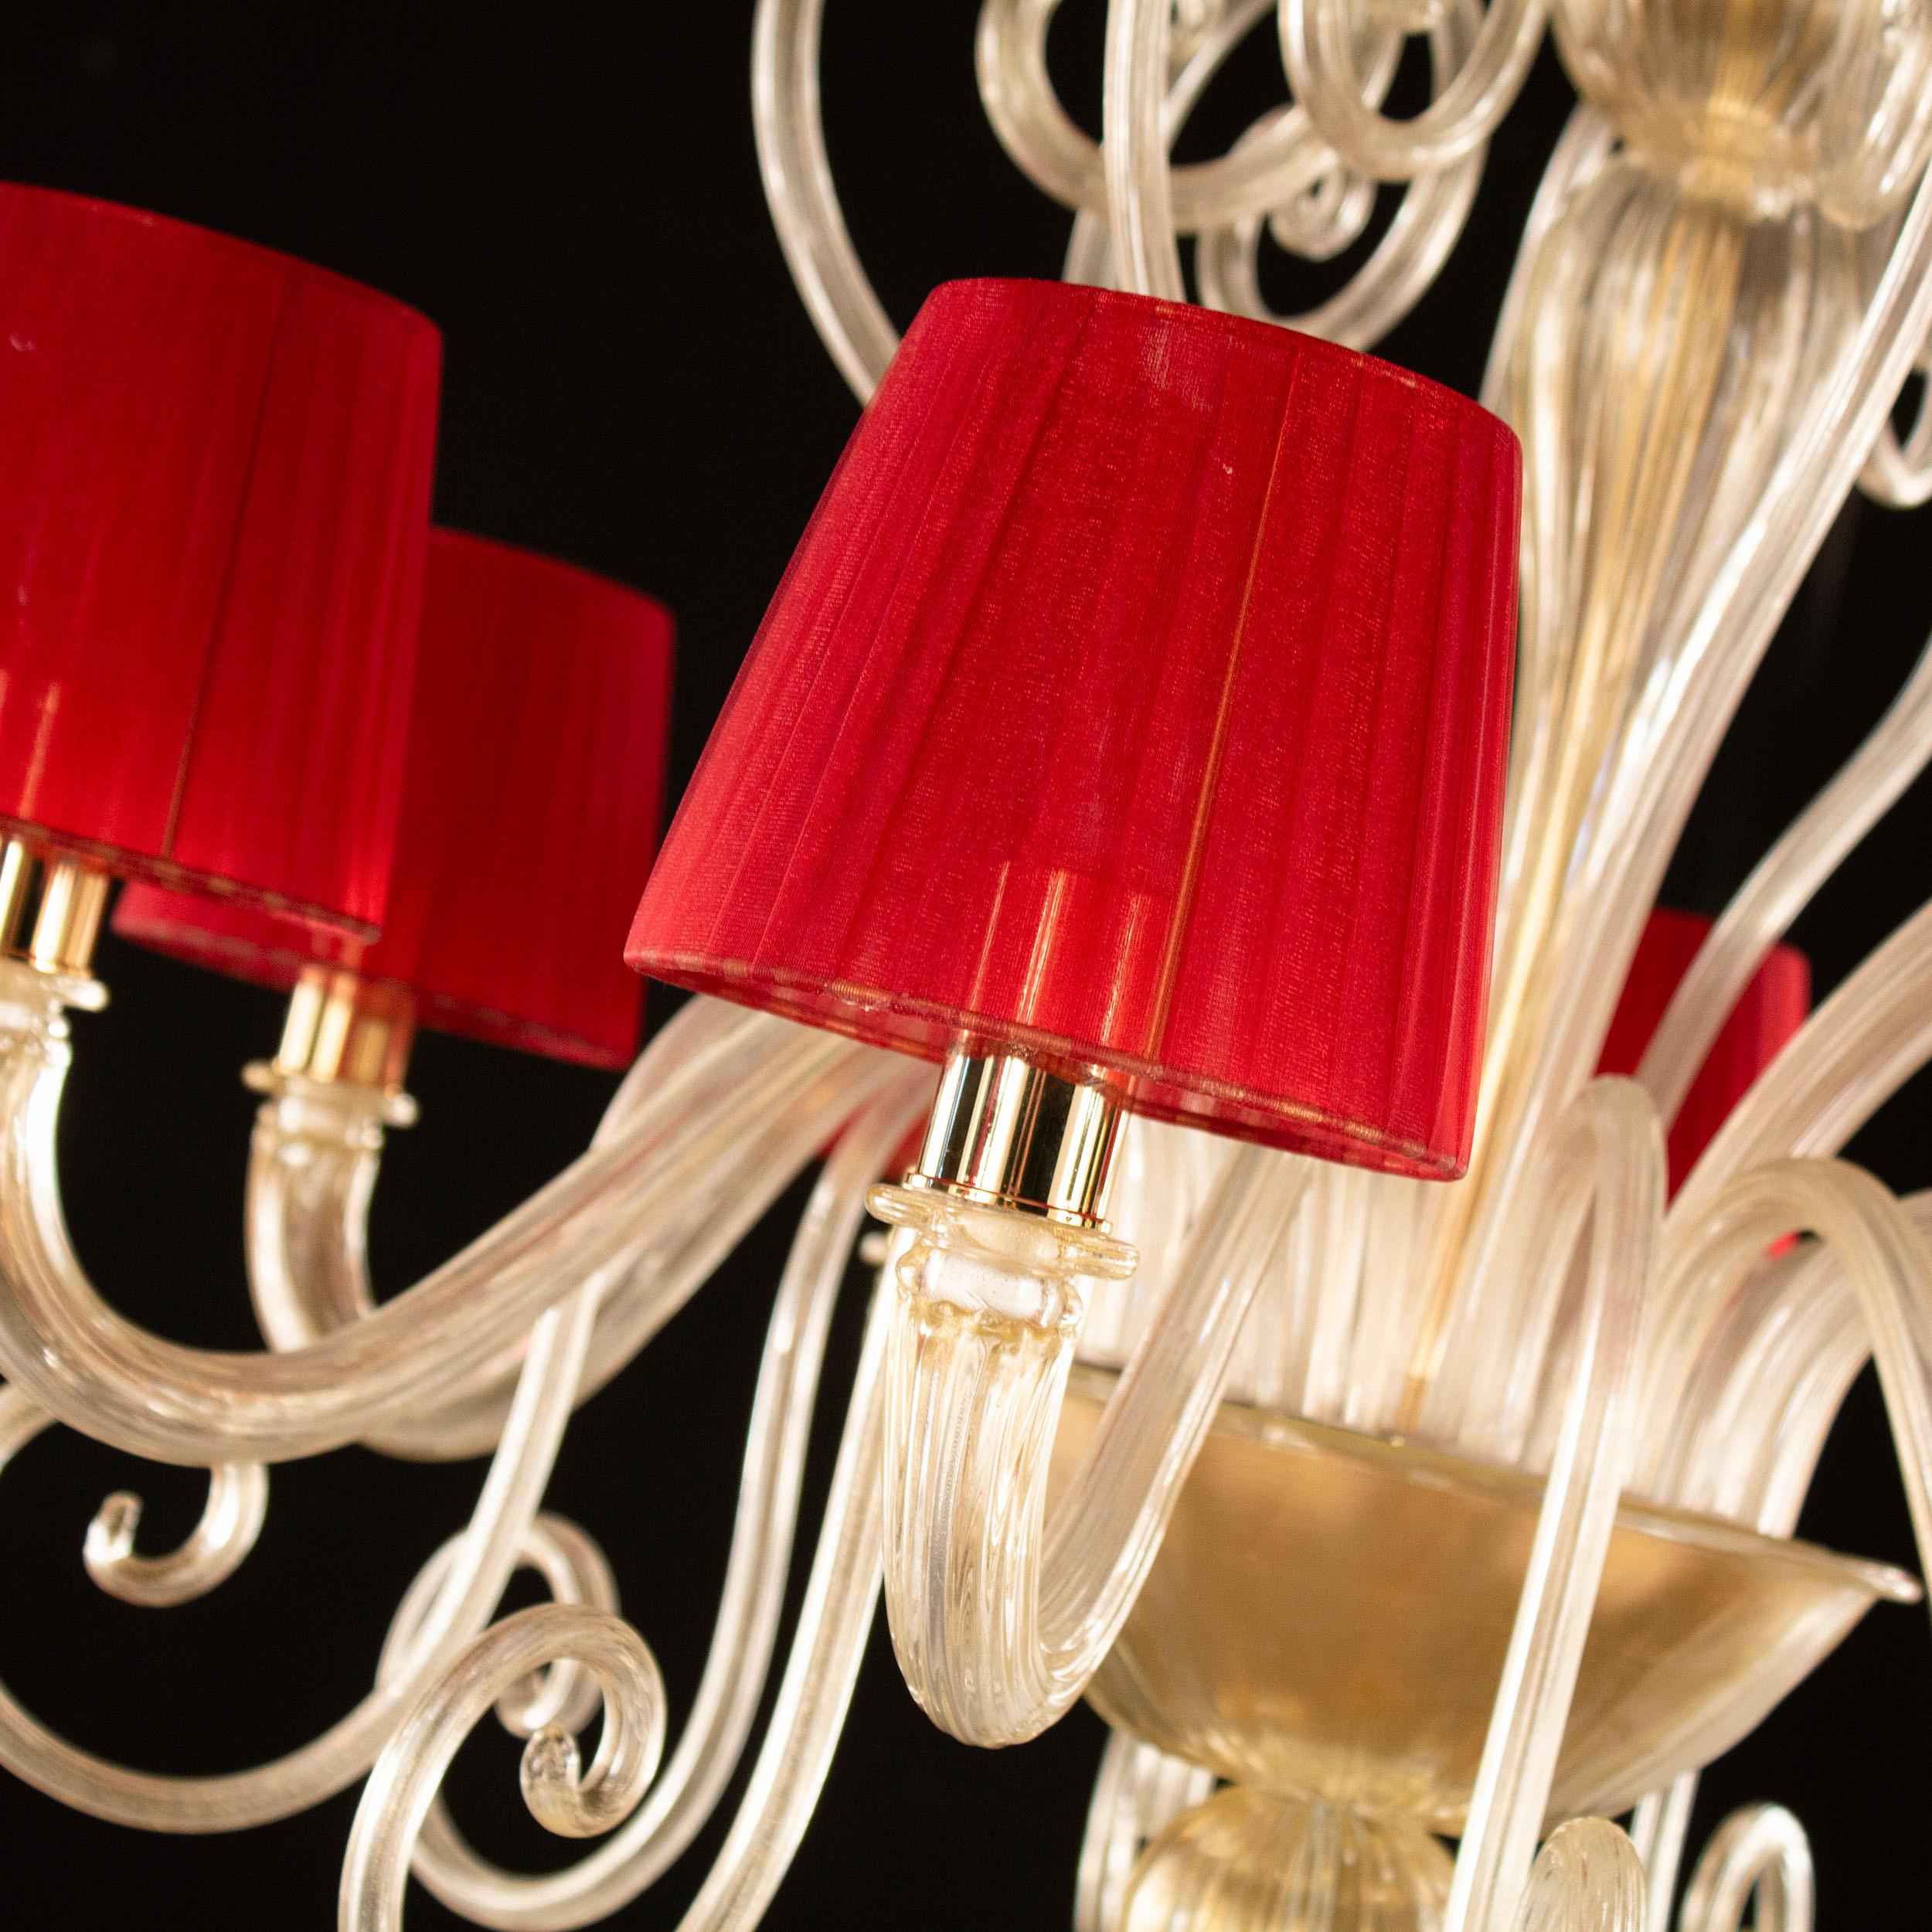 Lustre Gatsby 8 lumières feuille d'or verre artistique de Murano, avec abat-jour en organza rouge par Multiforme
Le lustre vénitien Gatsby est la combinaison parfaite d'éléments élégants et modernes. L'utilisation de couleurs aux tons vifs, la